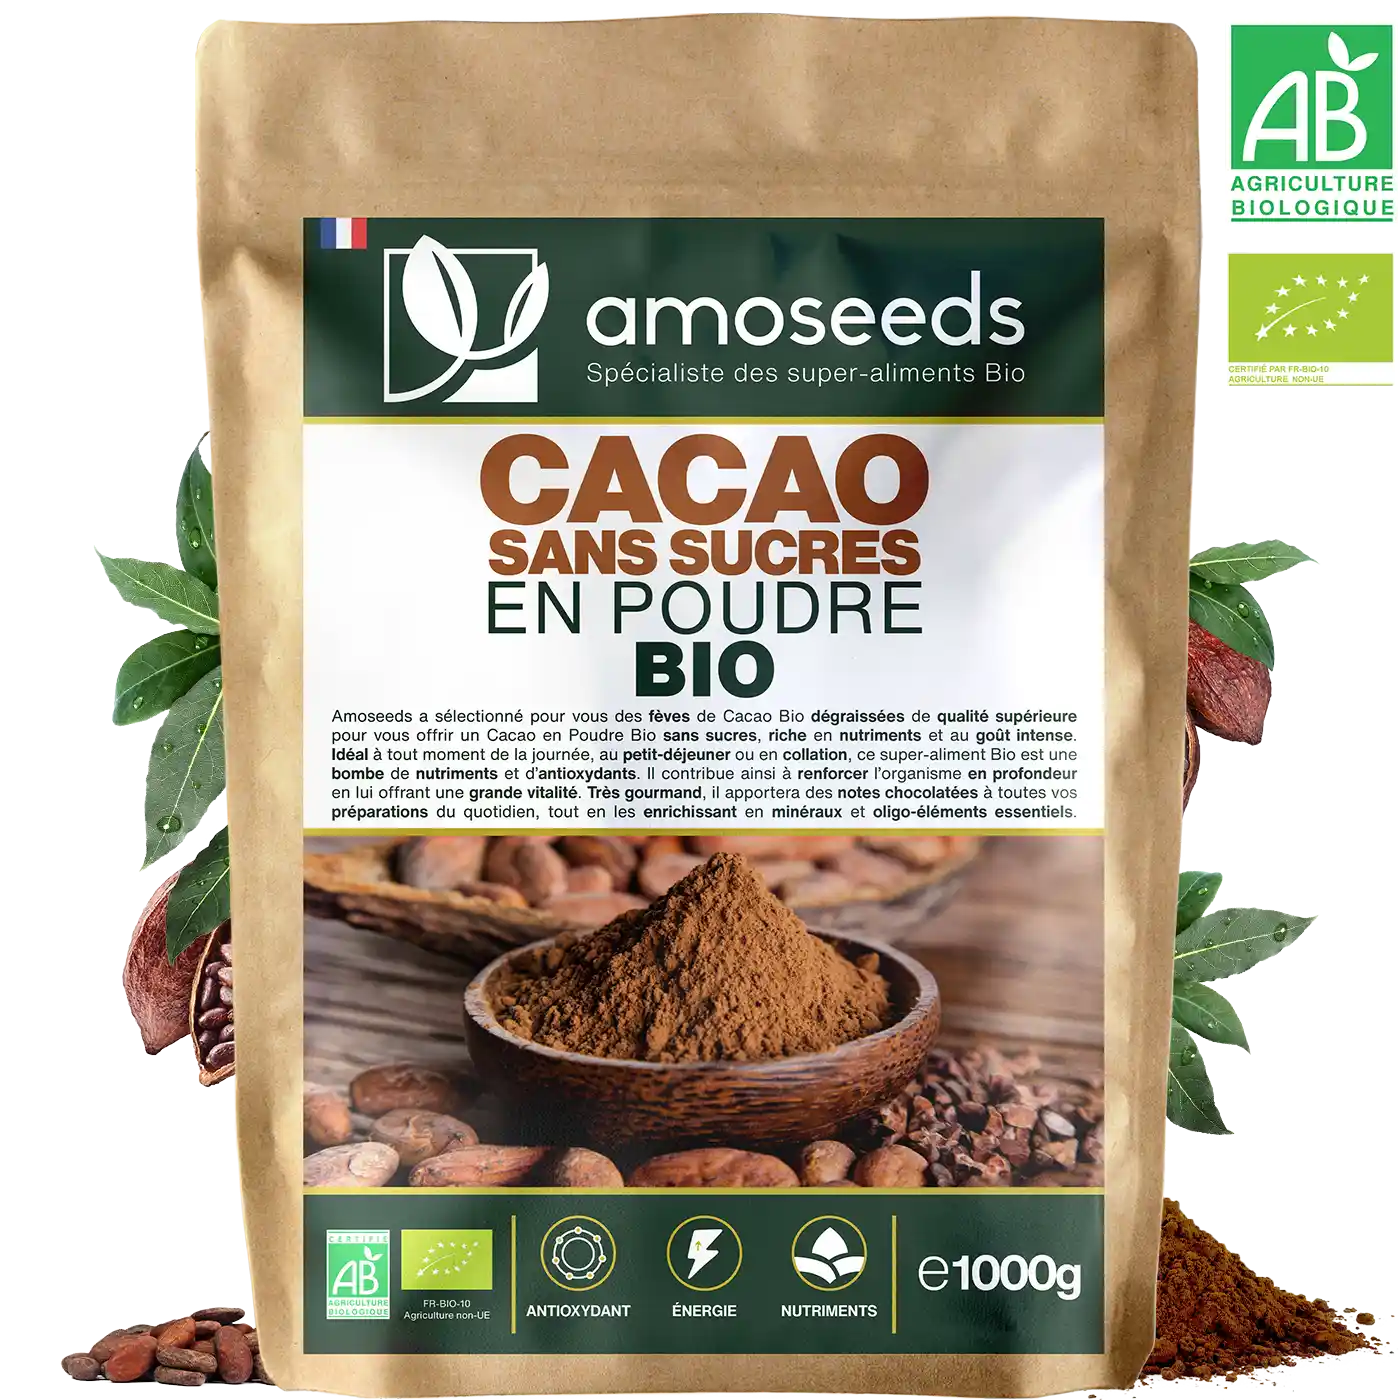 cacao en poudre pur hershey's chez carrefour dietetique a casablanca